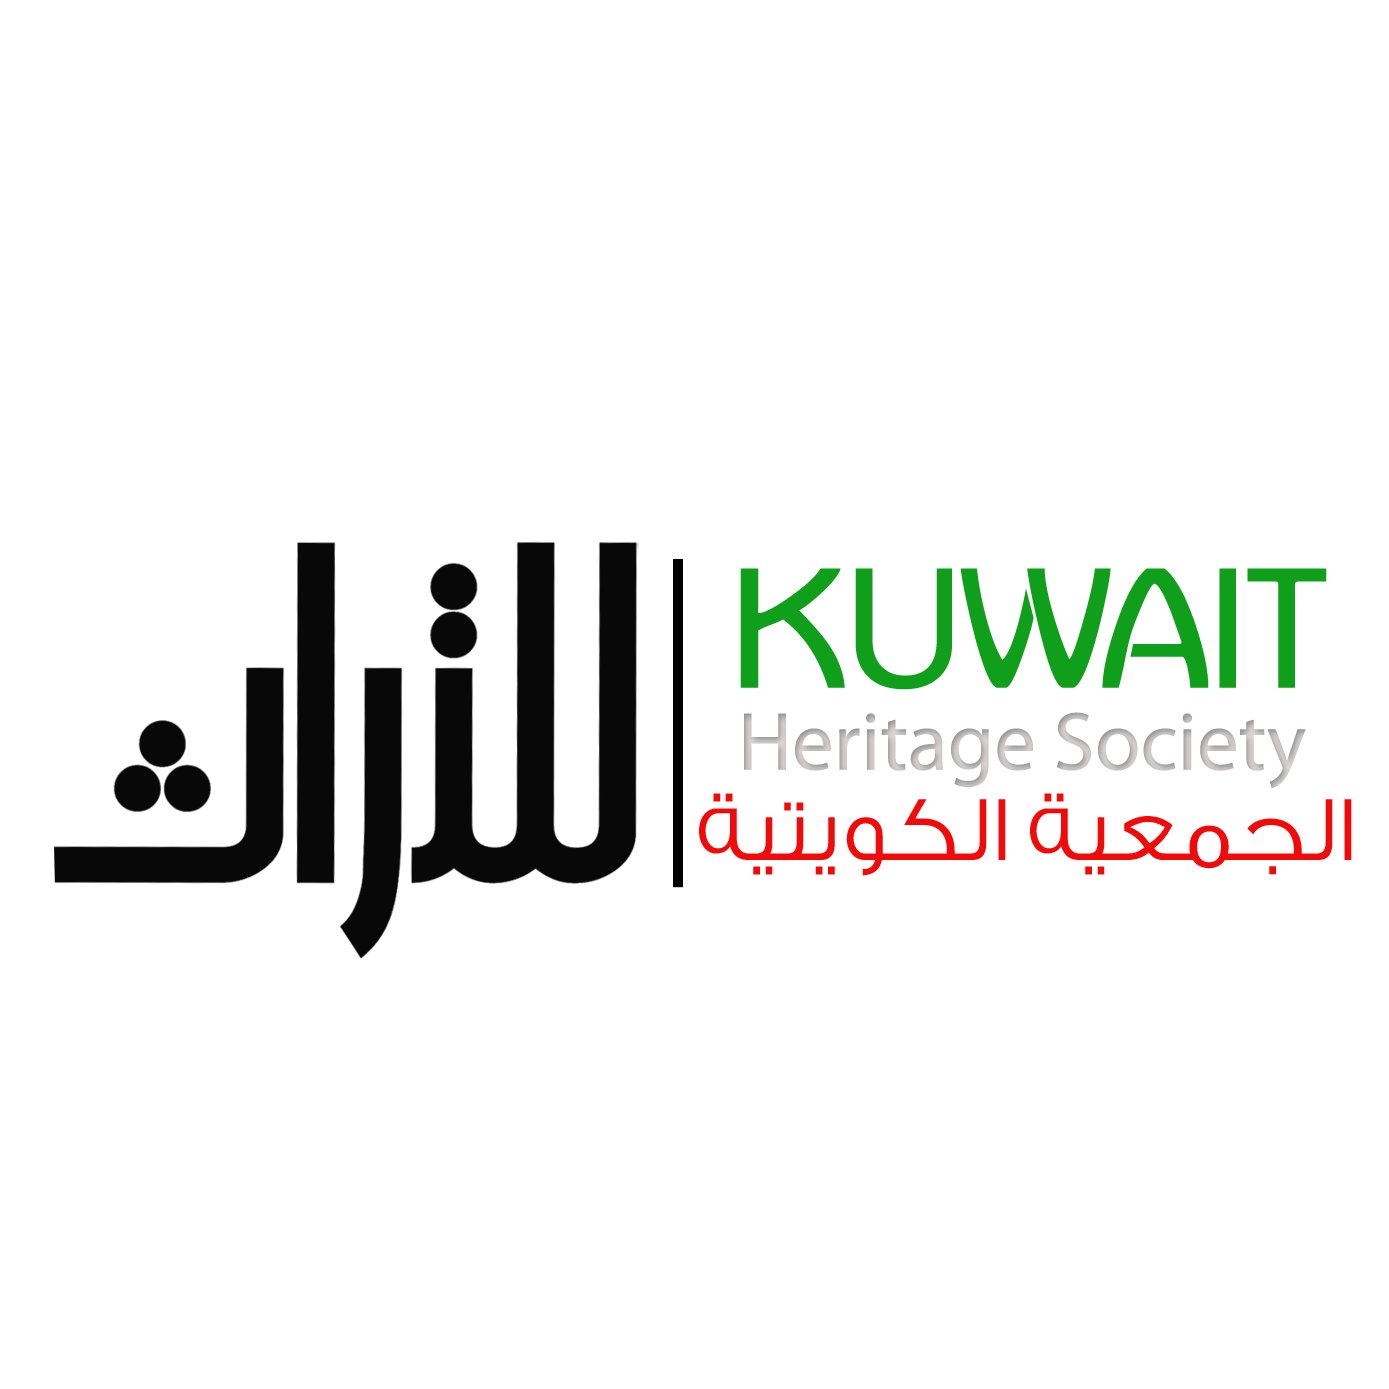 ‏‏‏‏‏‏الجمعية الكويتية للتراث
إحدى جمعيات النفع العام بالكويت - تم إشهارها بالقرار الوزاري رقم ( 34/أ ) لسنة 2017م.
المستشار القانوني المحامي خالد أيوب القناعي